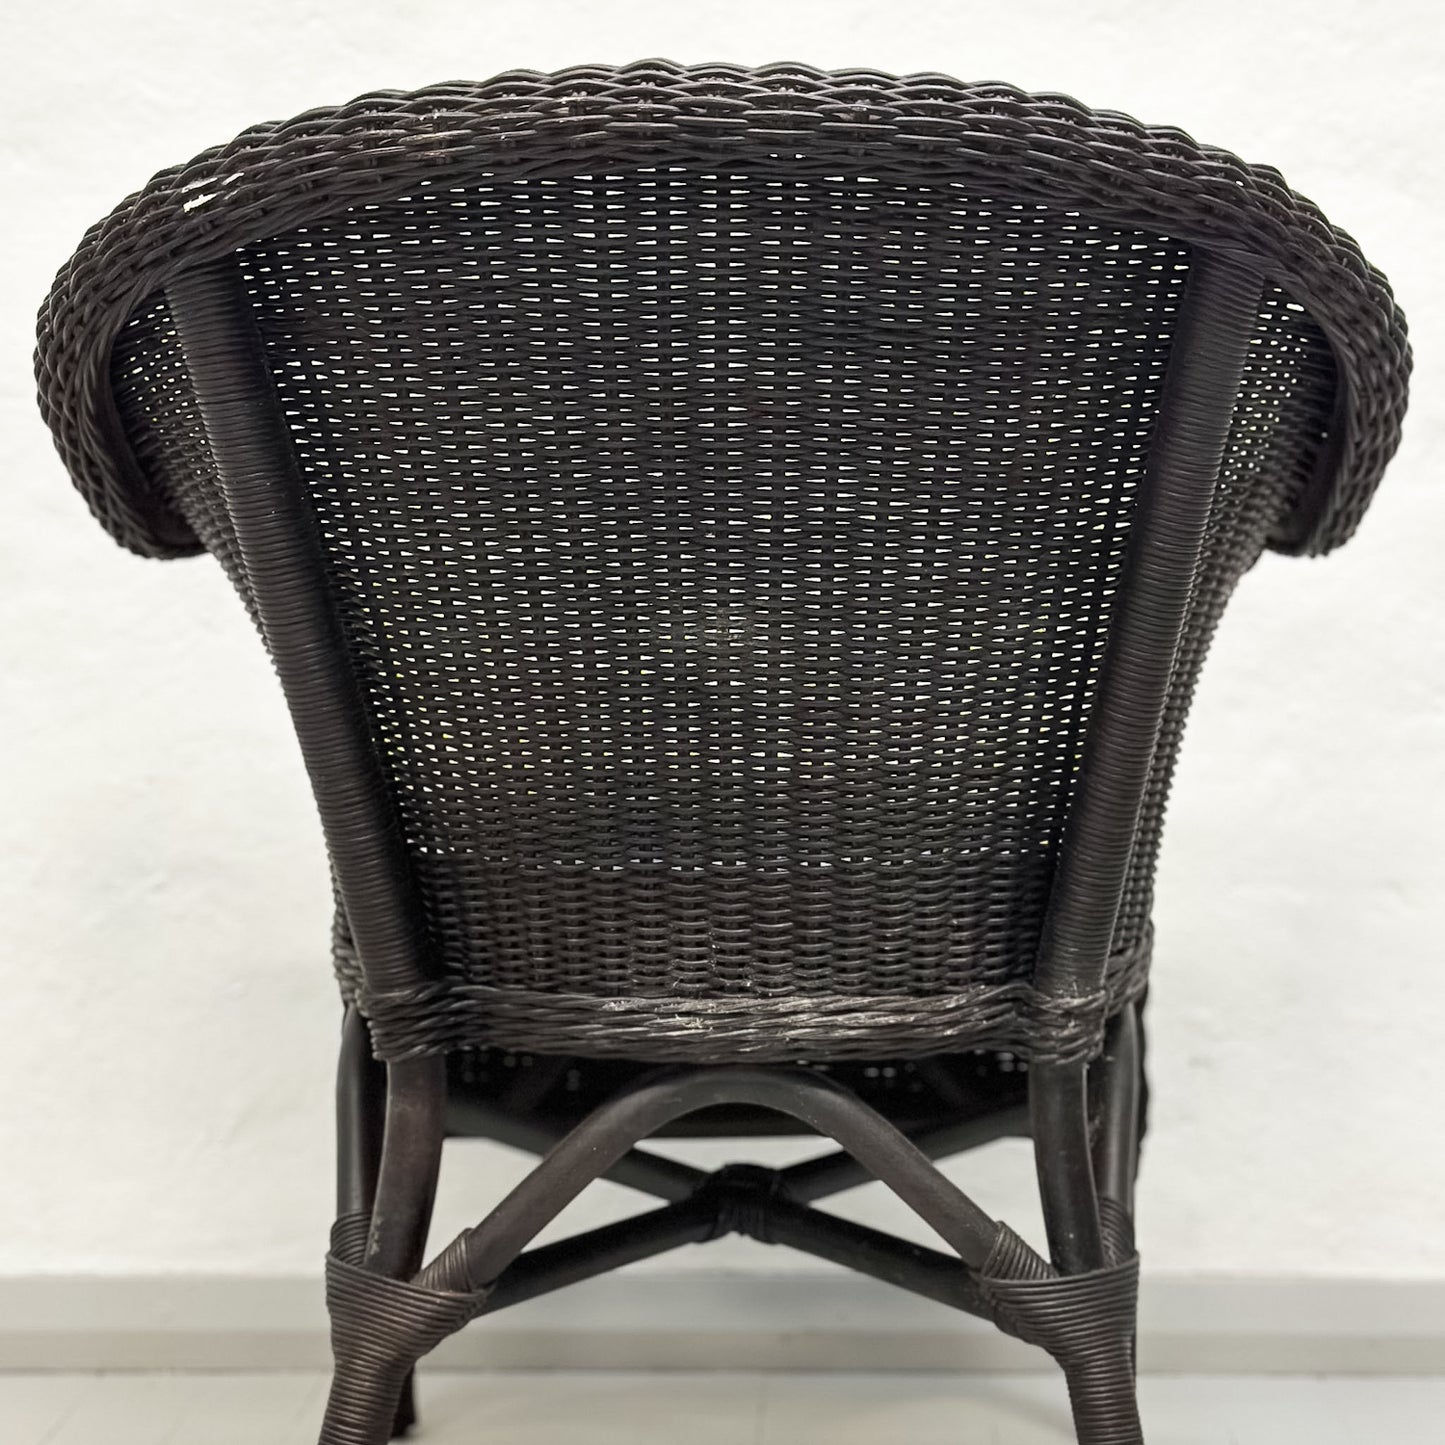 Rattan Tamarind Chair with Cushion